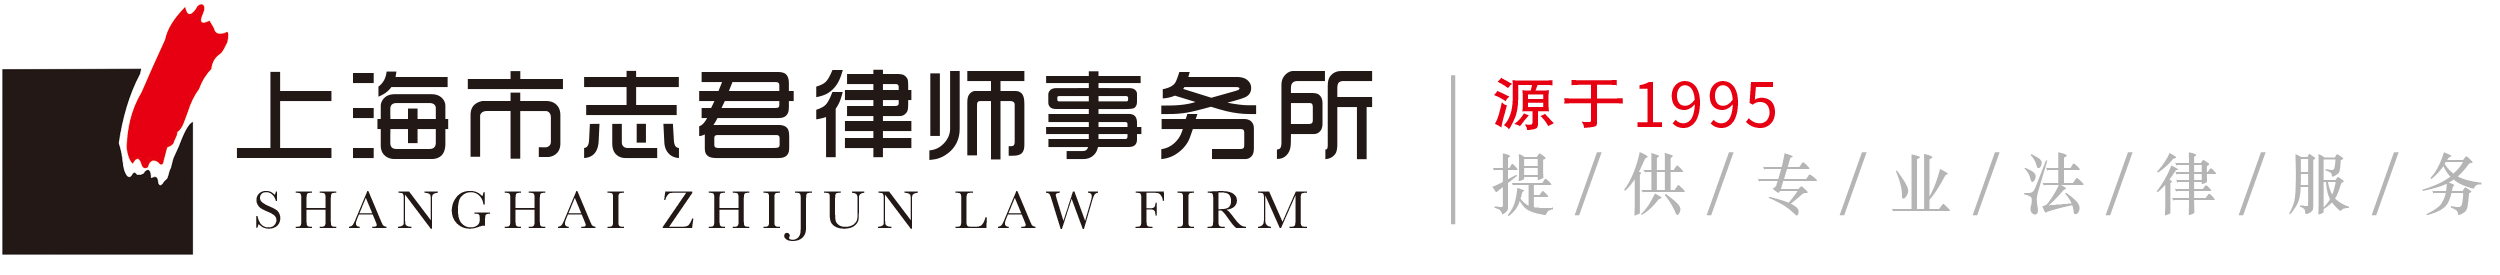 上海市志君律师事务所logo